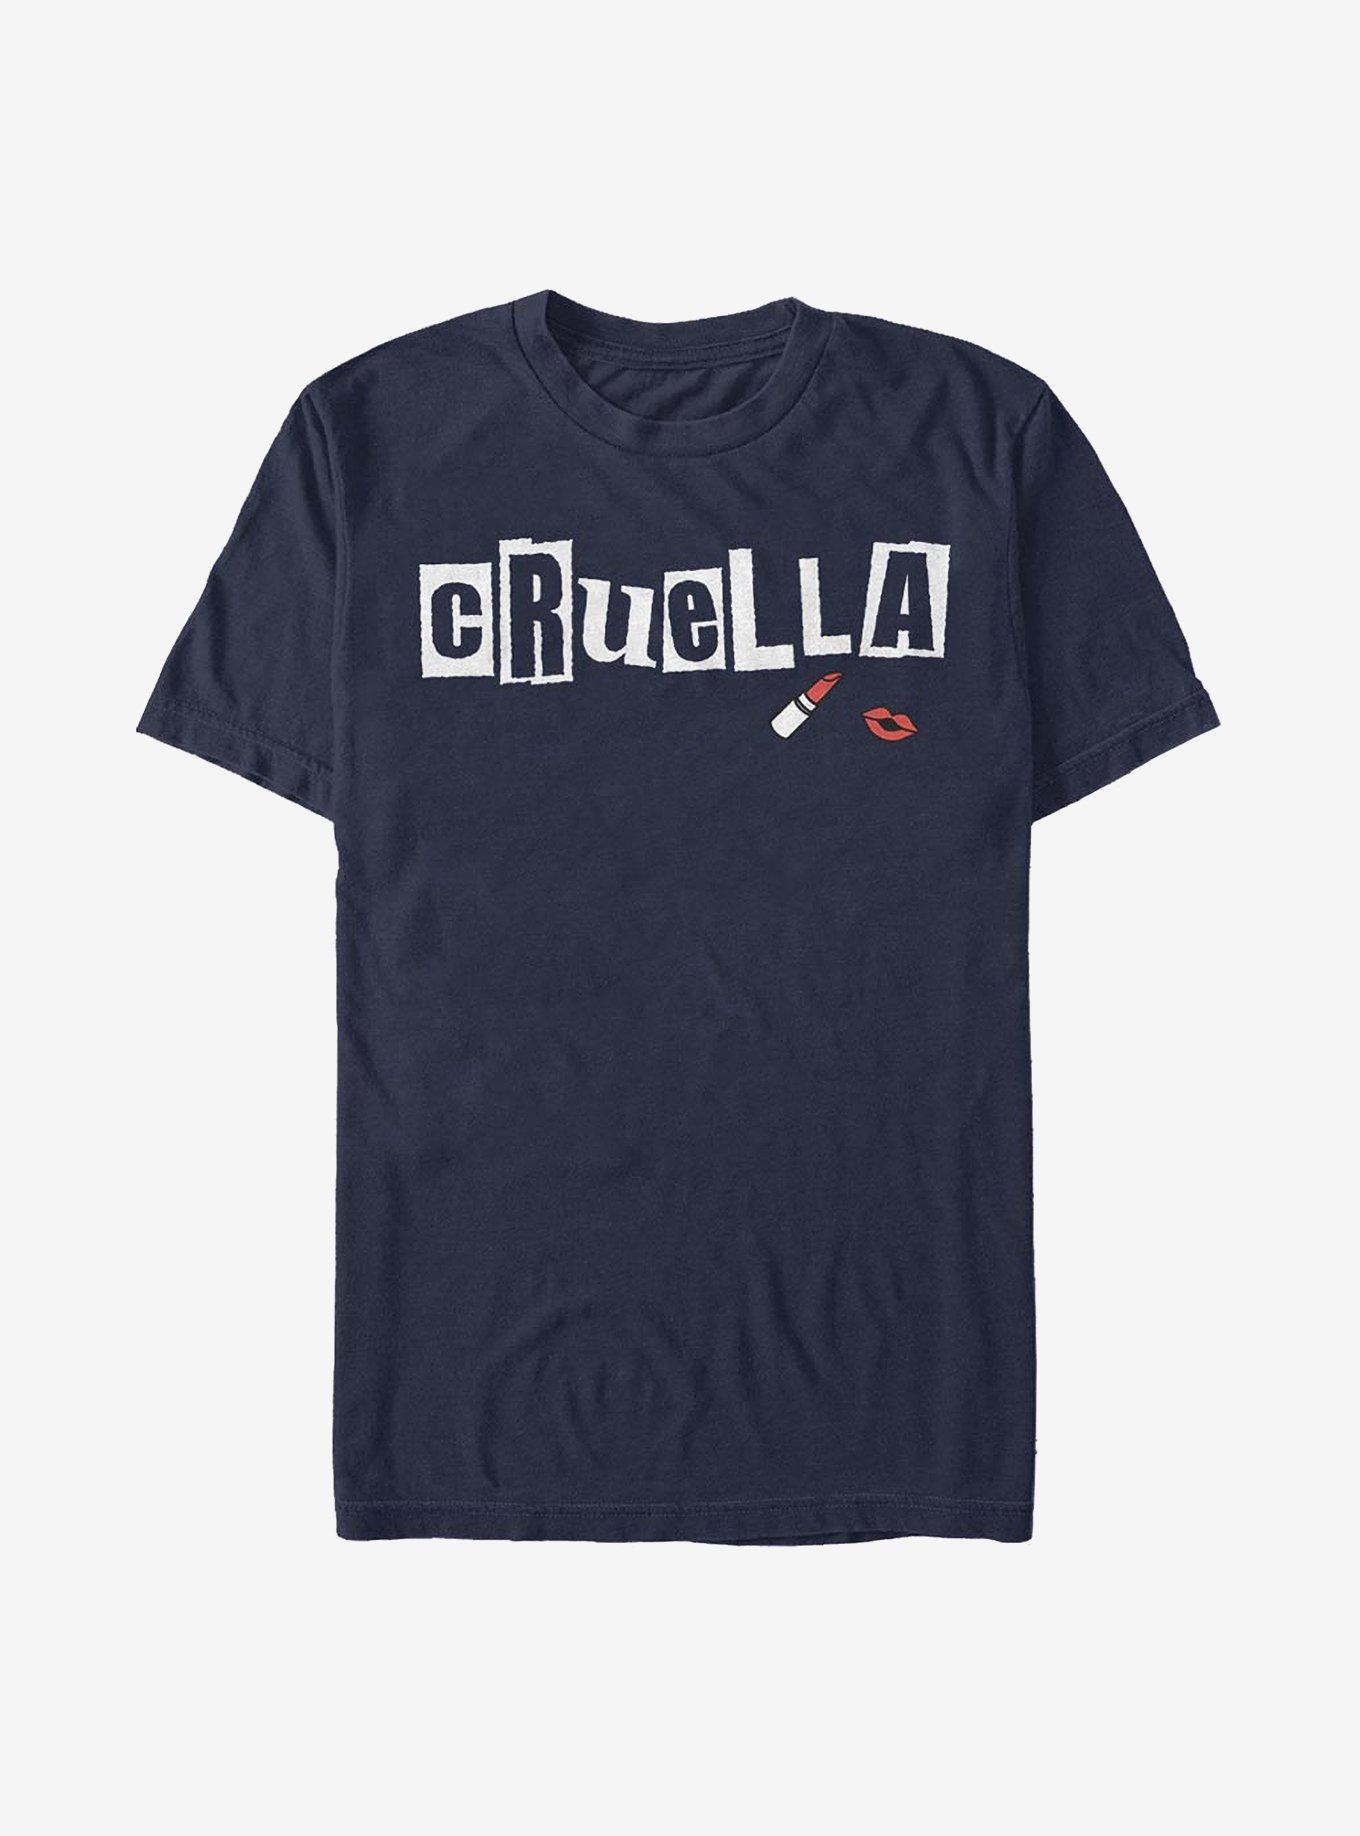 Disney Cruella Name Cut Out Letters T-Shirt, NAVY, hi-res